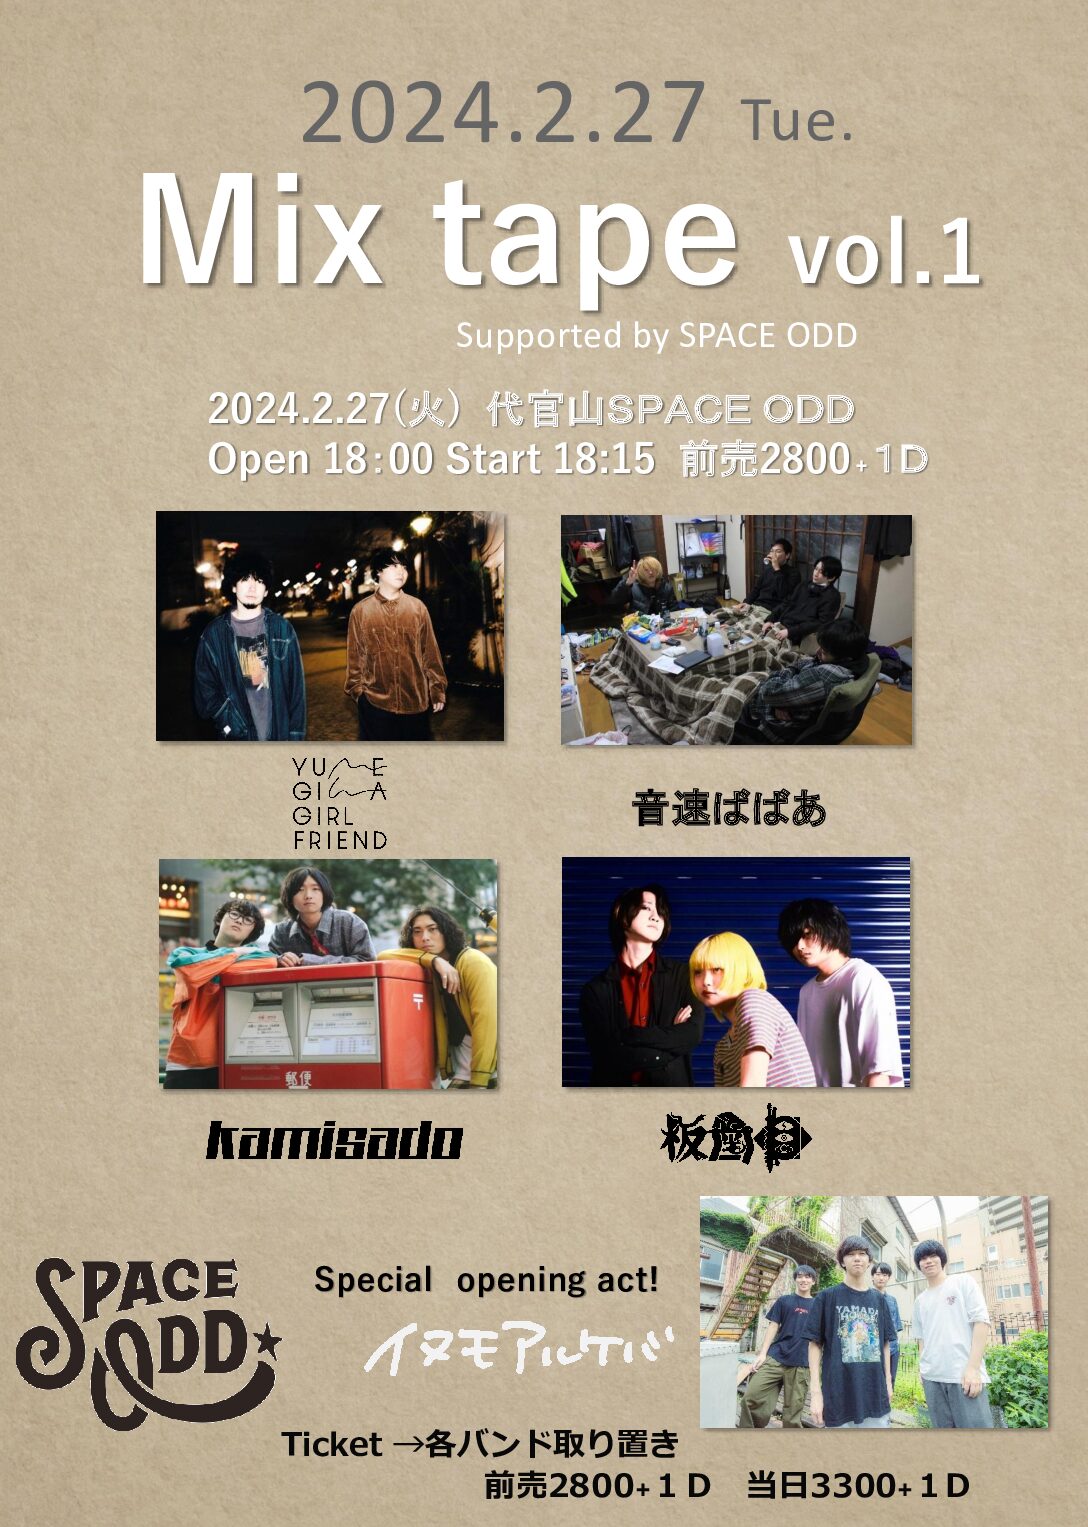 Mix tape vol.1